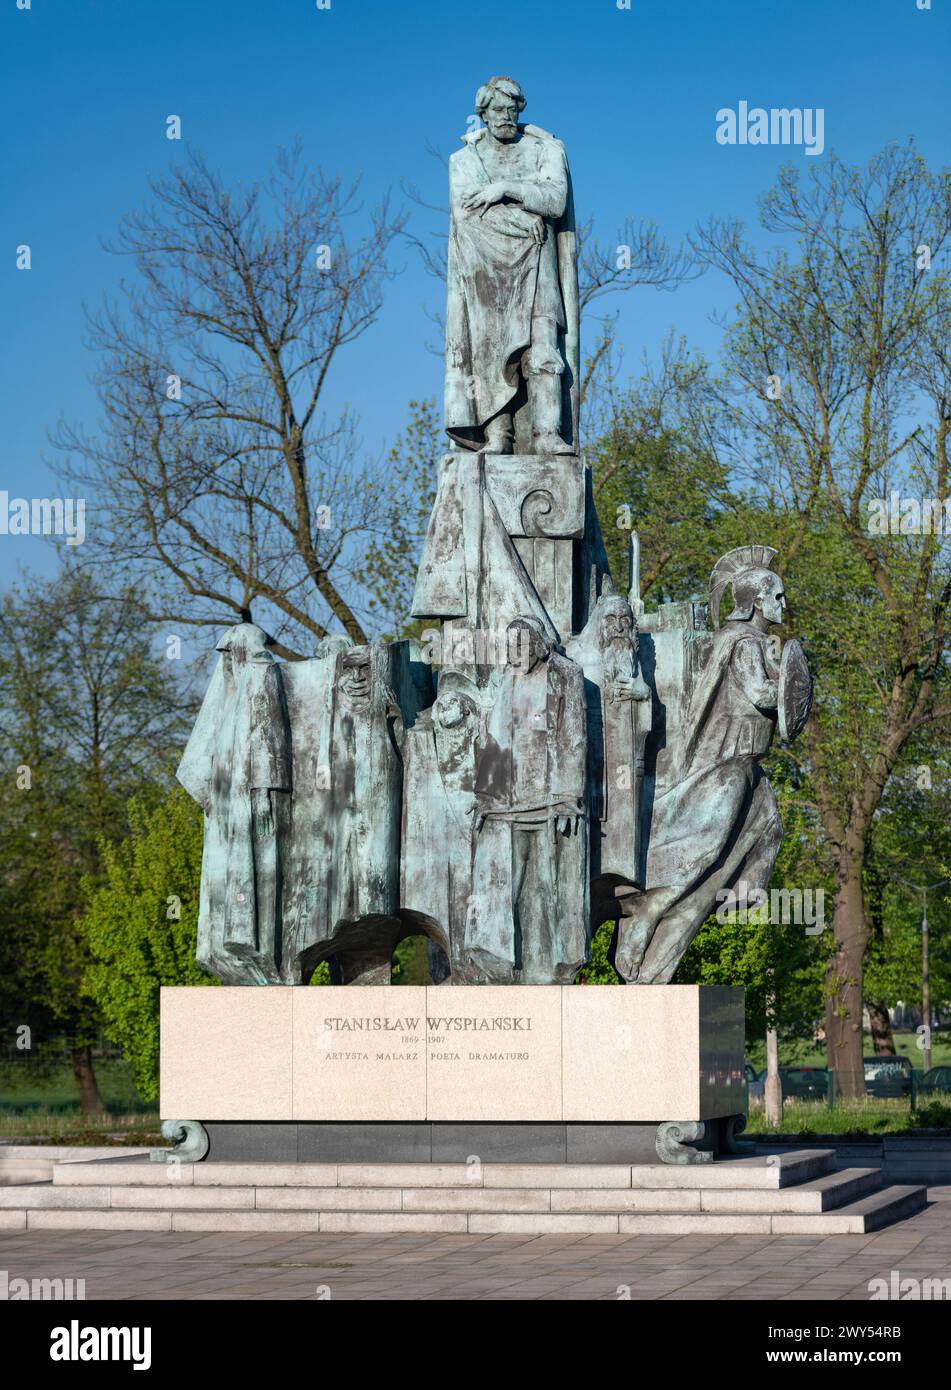 Monument to Stanislaw Wyspianski, Krakow, Poland Stock Photo